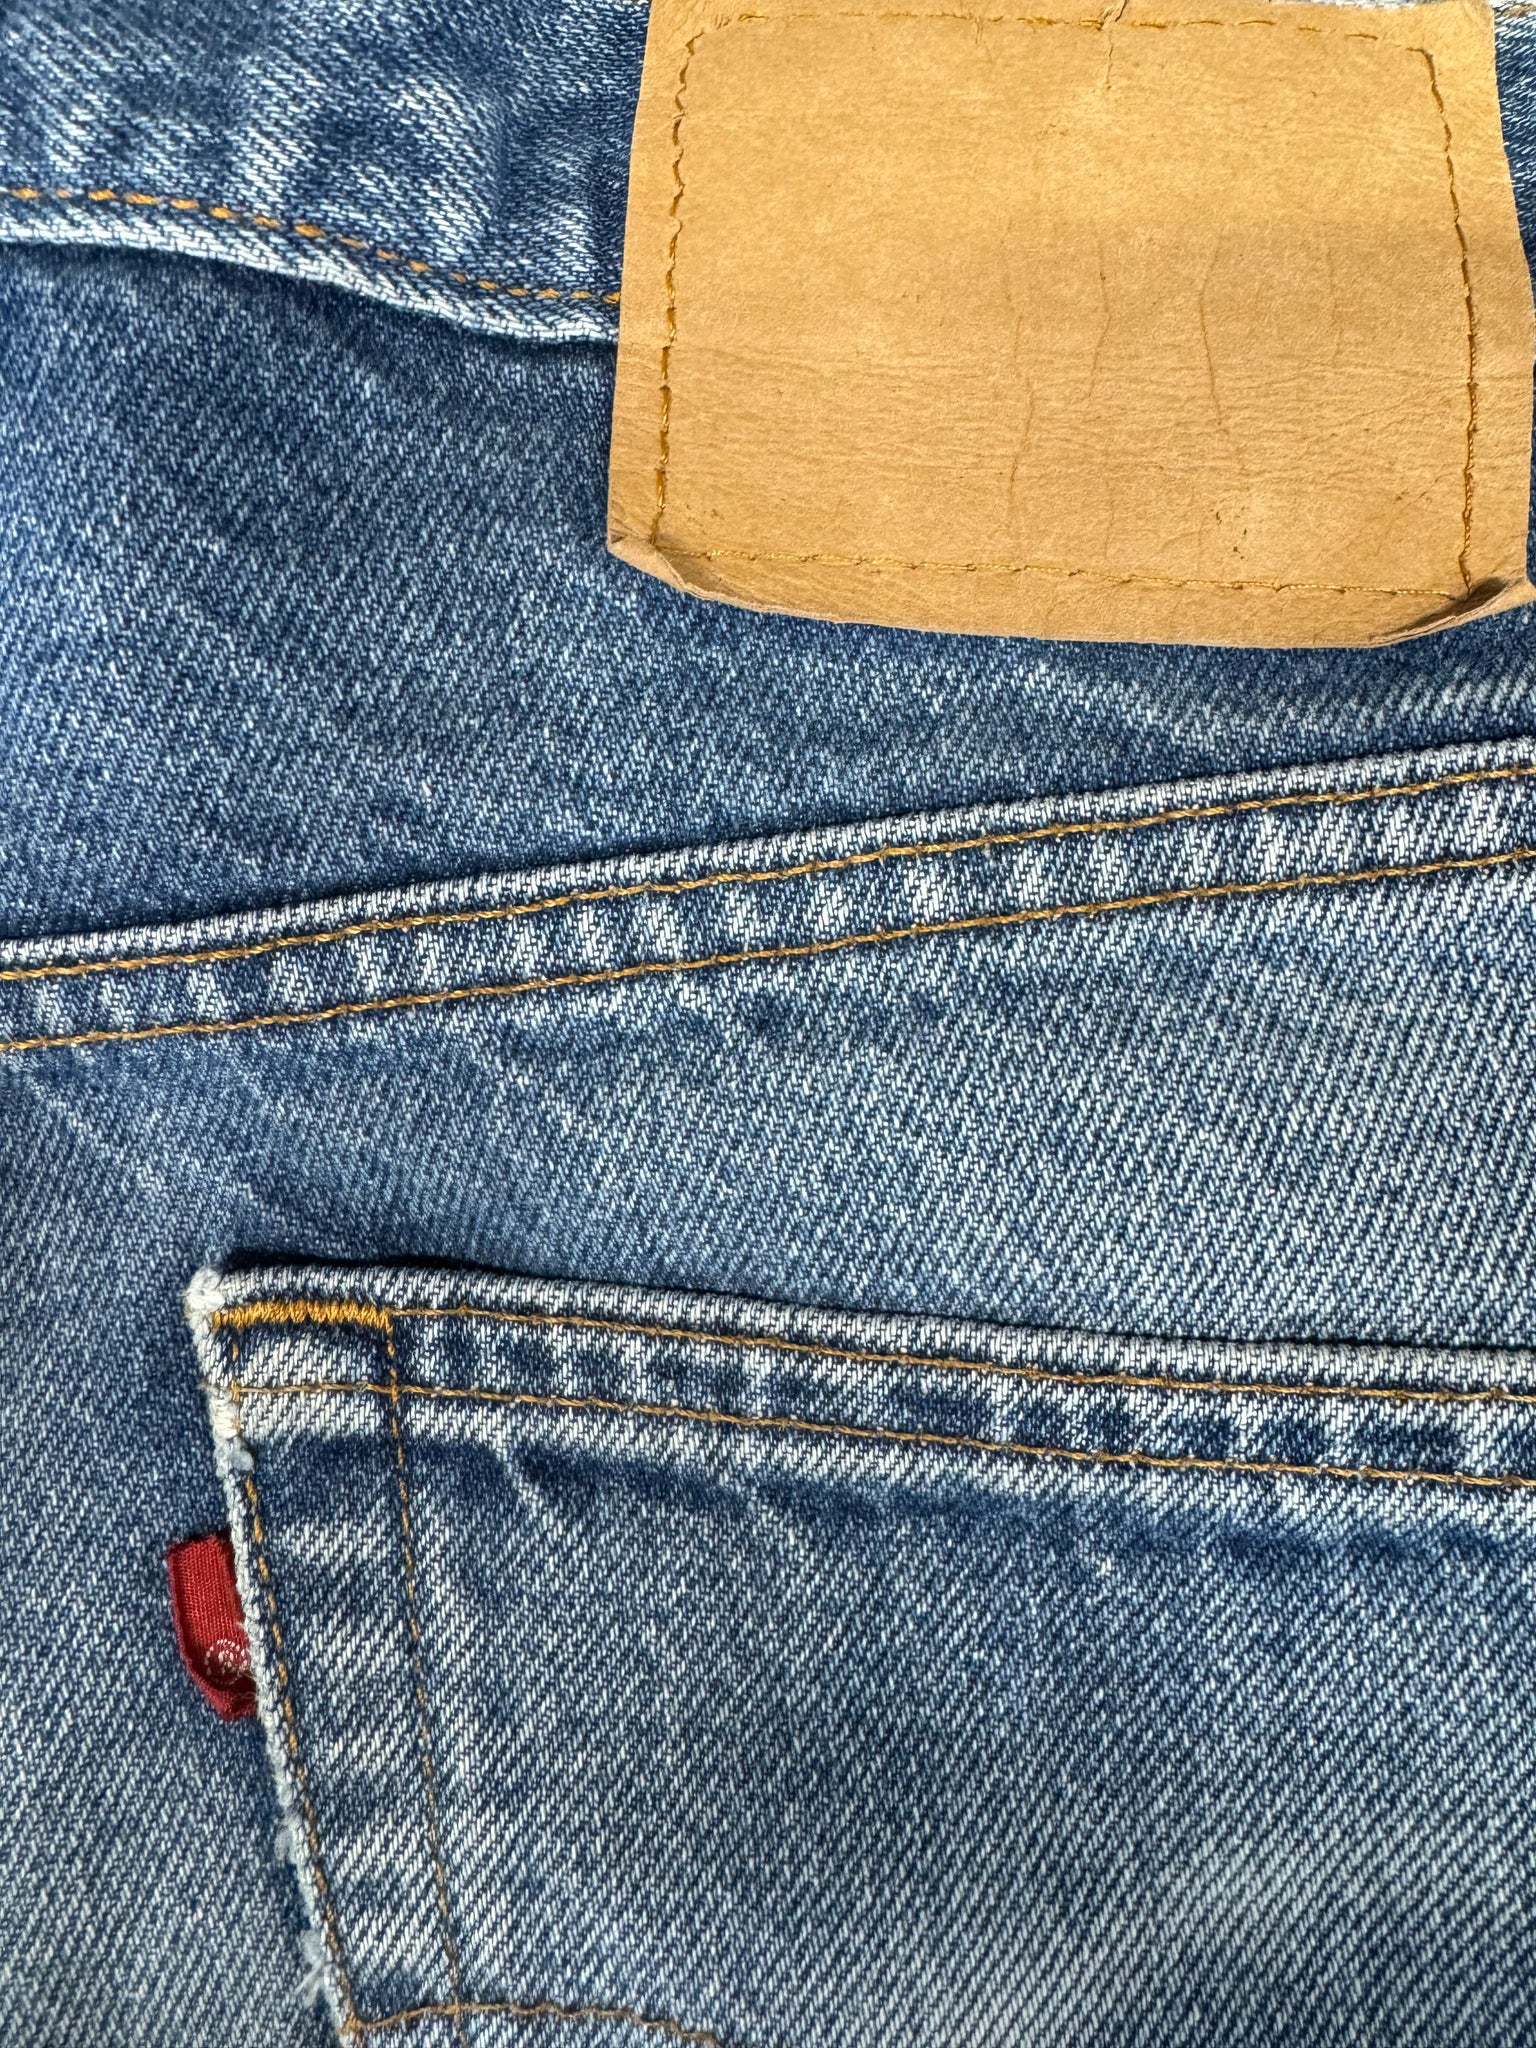 Vintage USA Levi's 517 Super Wash Denim Jeans (JYJ0324-126)